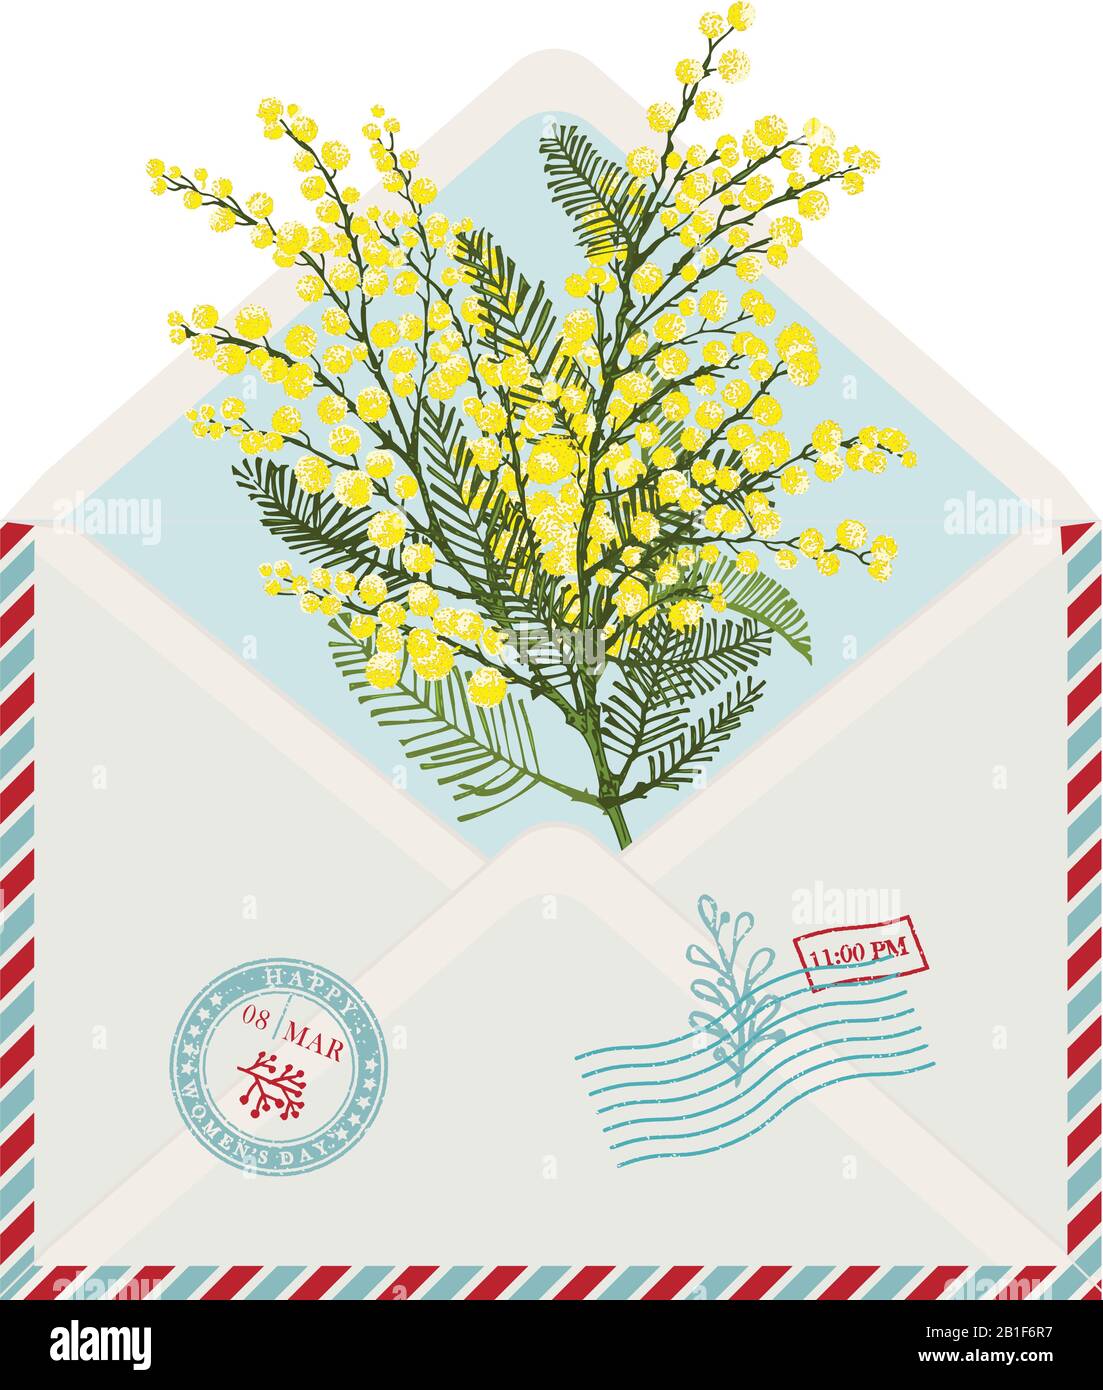 Modello di vintage post carta busta con disegno a mano ramo di mimosa fiore giallo. Texture grunge 8 marzo gomma timbro Luogo per il vostro Illustrazione Vettoriale